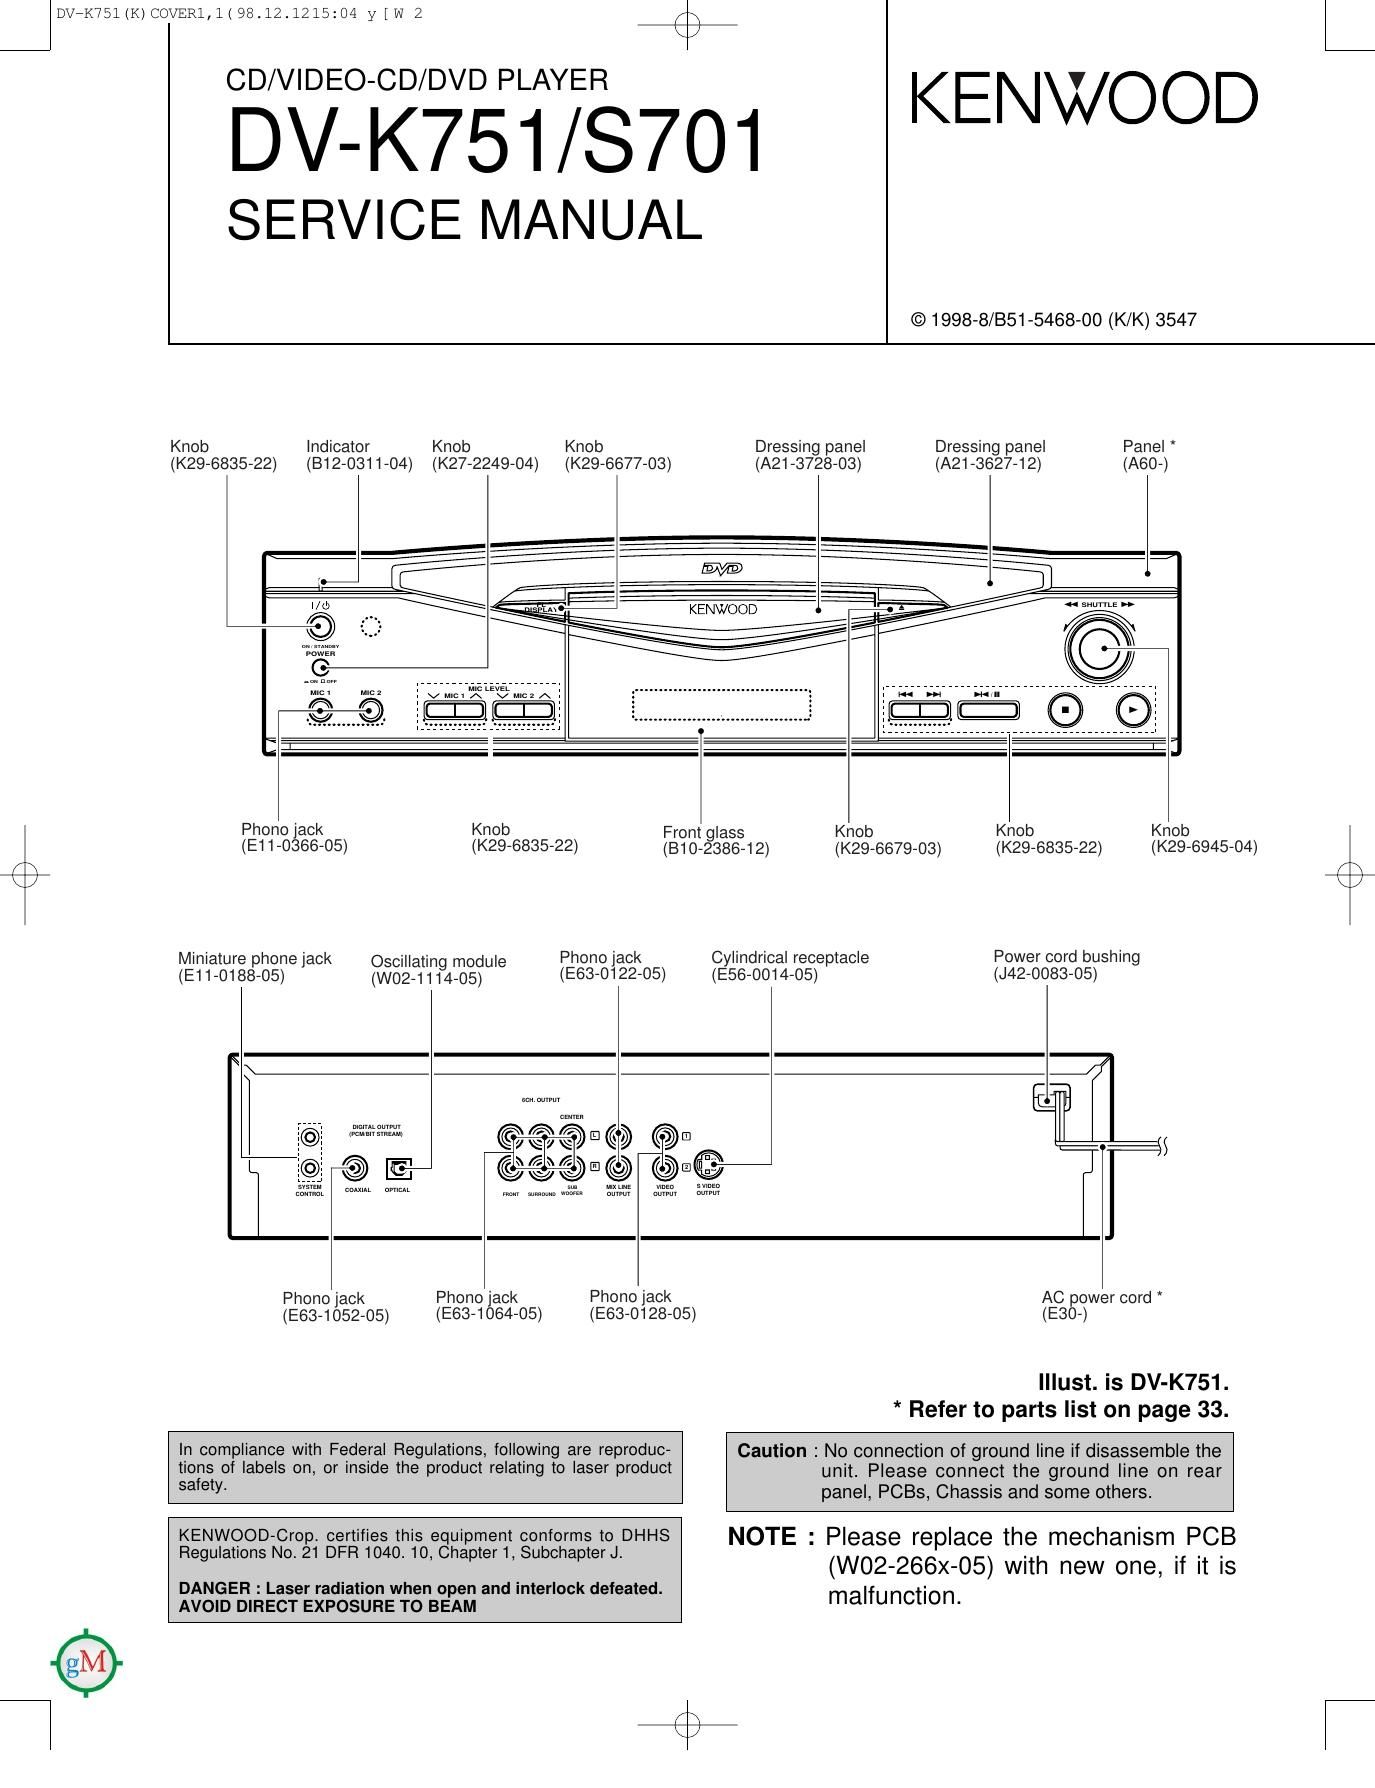 Free Download Kenwood Dvs 701 Service Manual